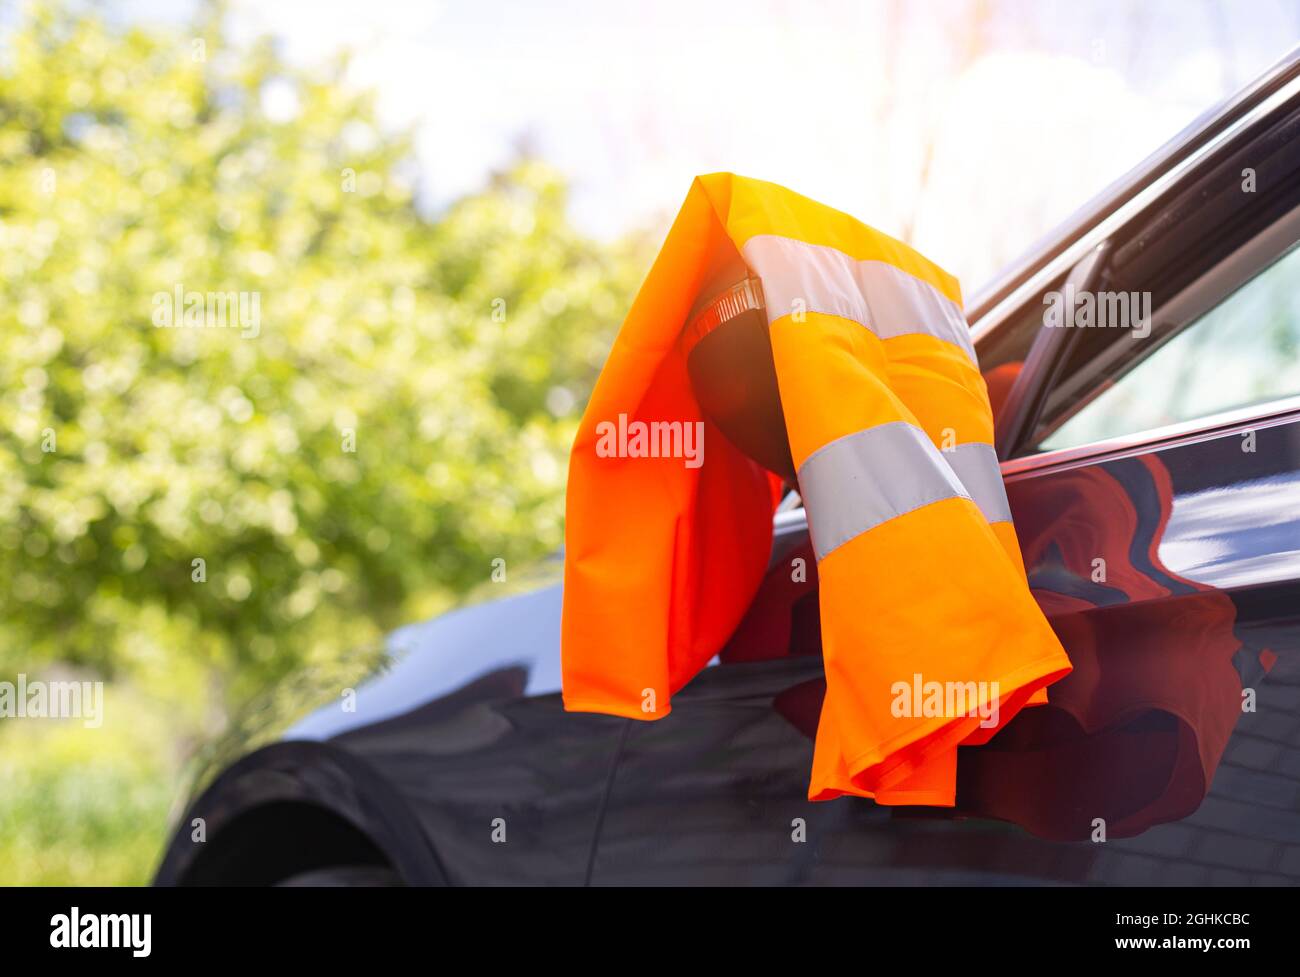 Eine orangefarbene Warnweste hängt am Spiegel eines Pkw